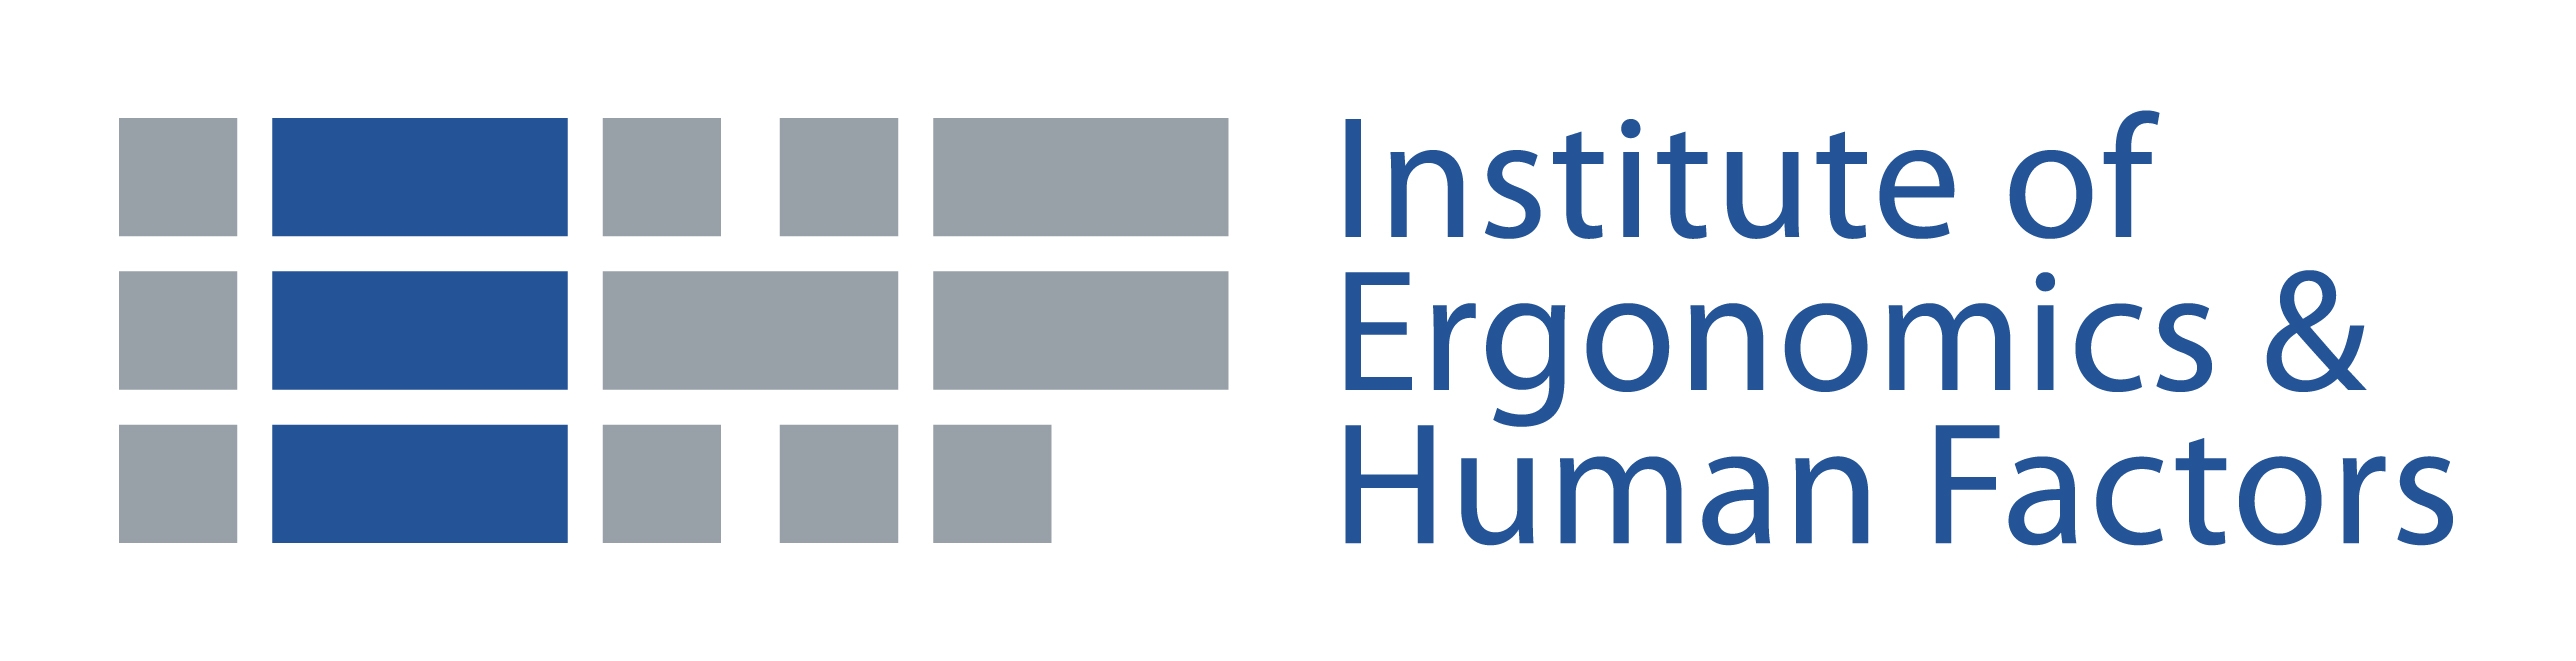 The Institute of Ergonomics & Human Factors